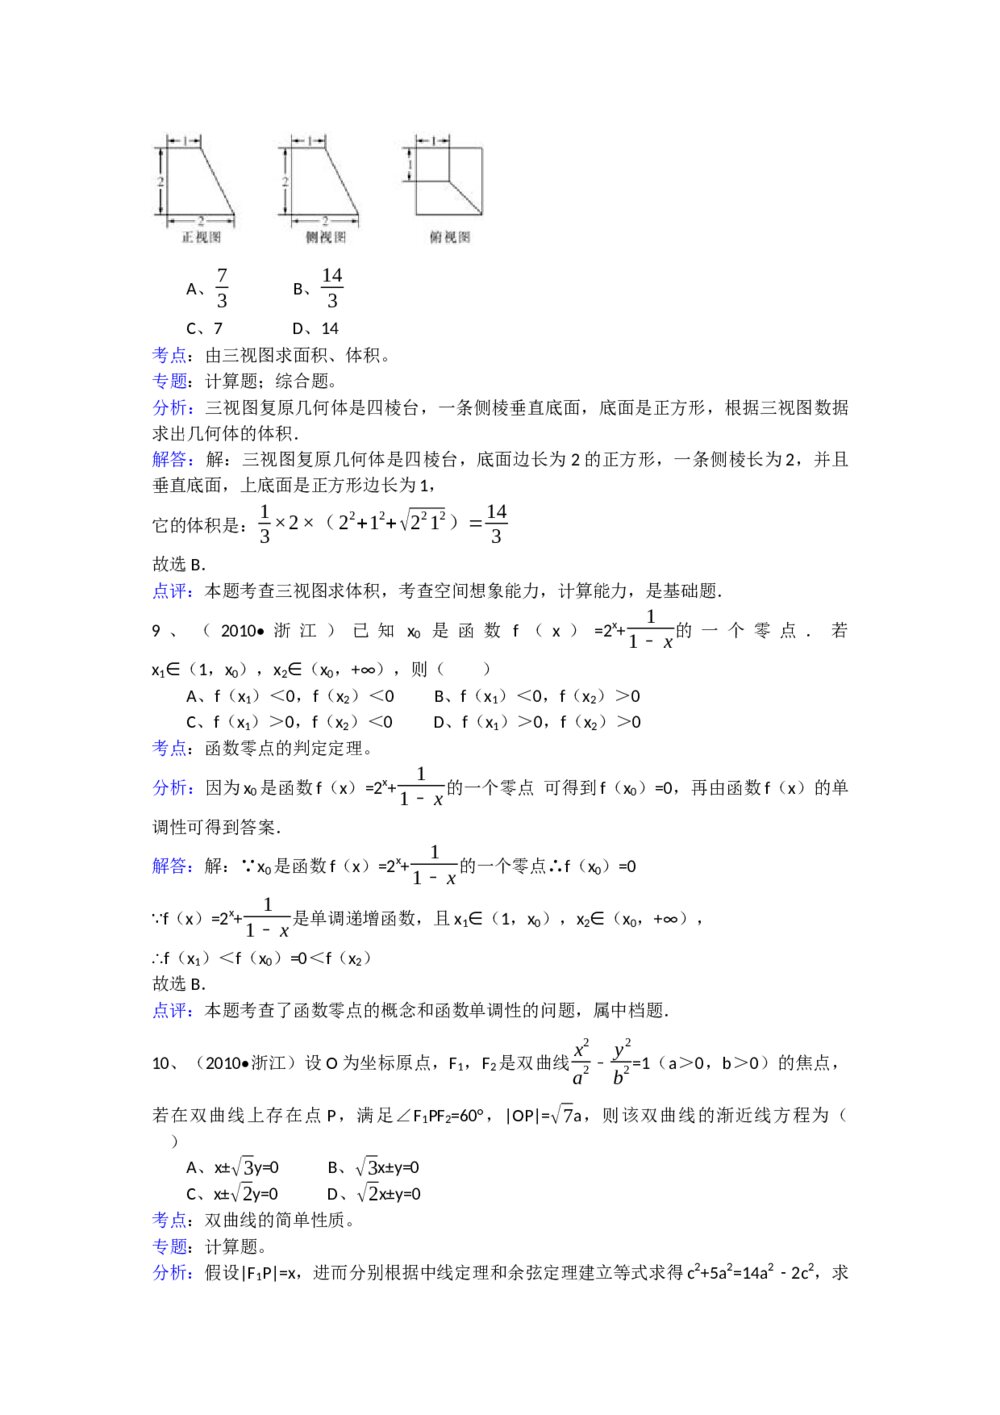 2010年高考浙江(文科)数学试题试卷及答案解答(精校版)8